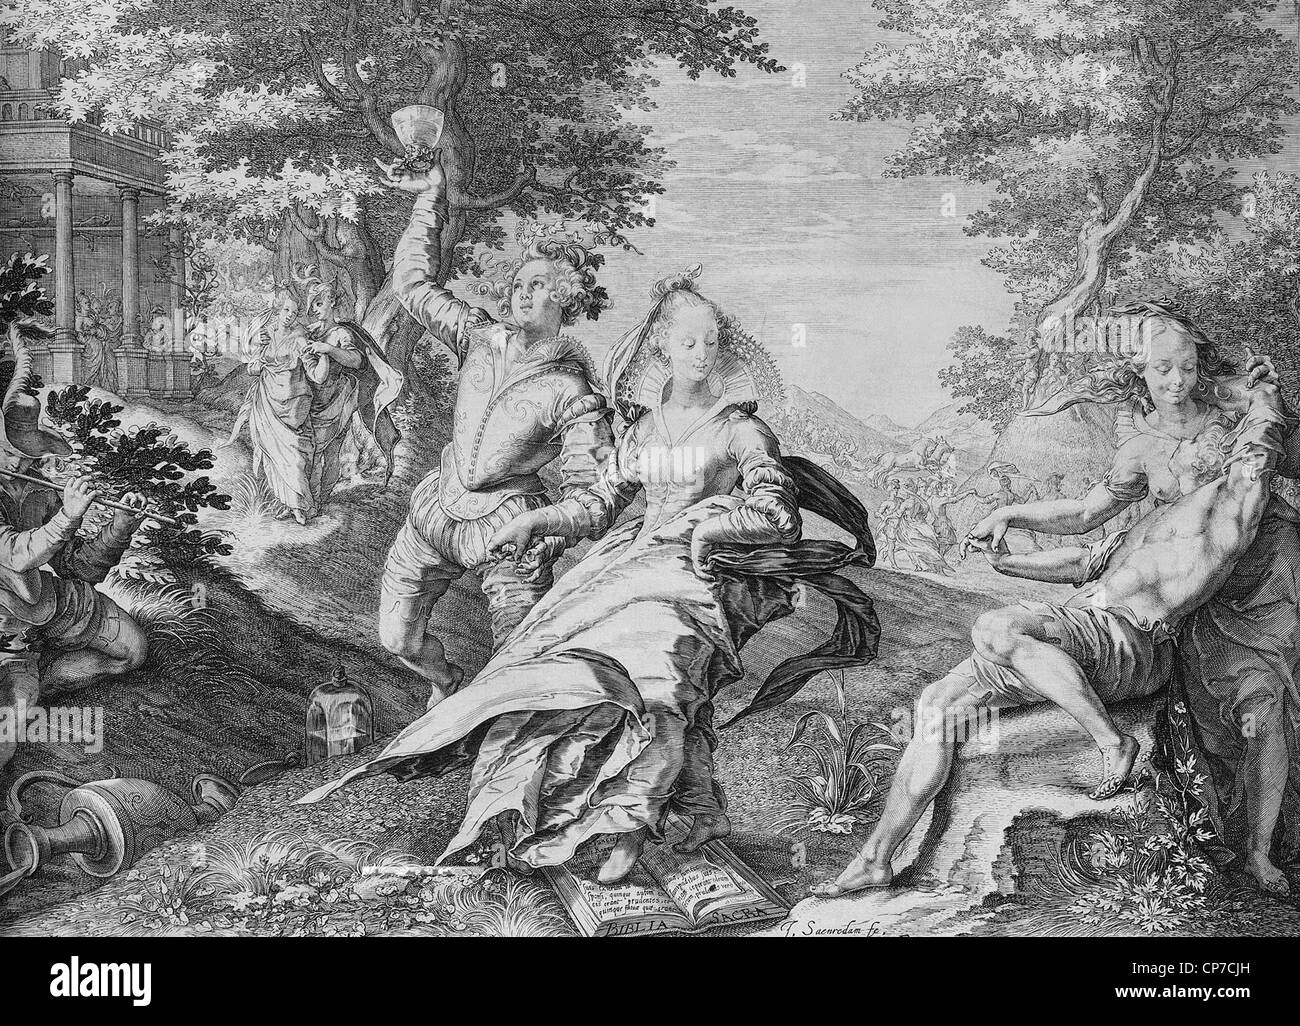 Bacchantischen Szene. Aus "Gleichnis vom klugen und törichten Jungfrauen des Künstlers Jan Saenredam zwischen 1601-1625. Stockfoto